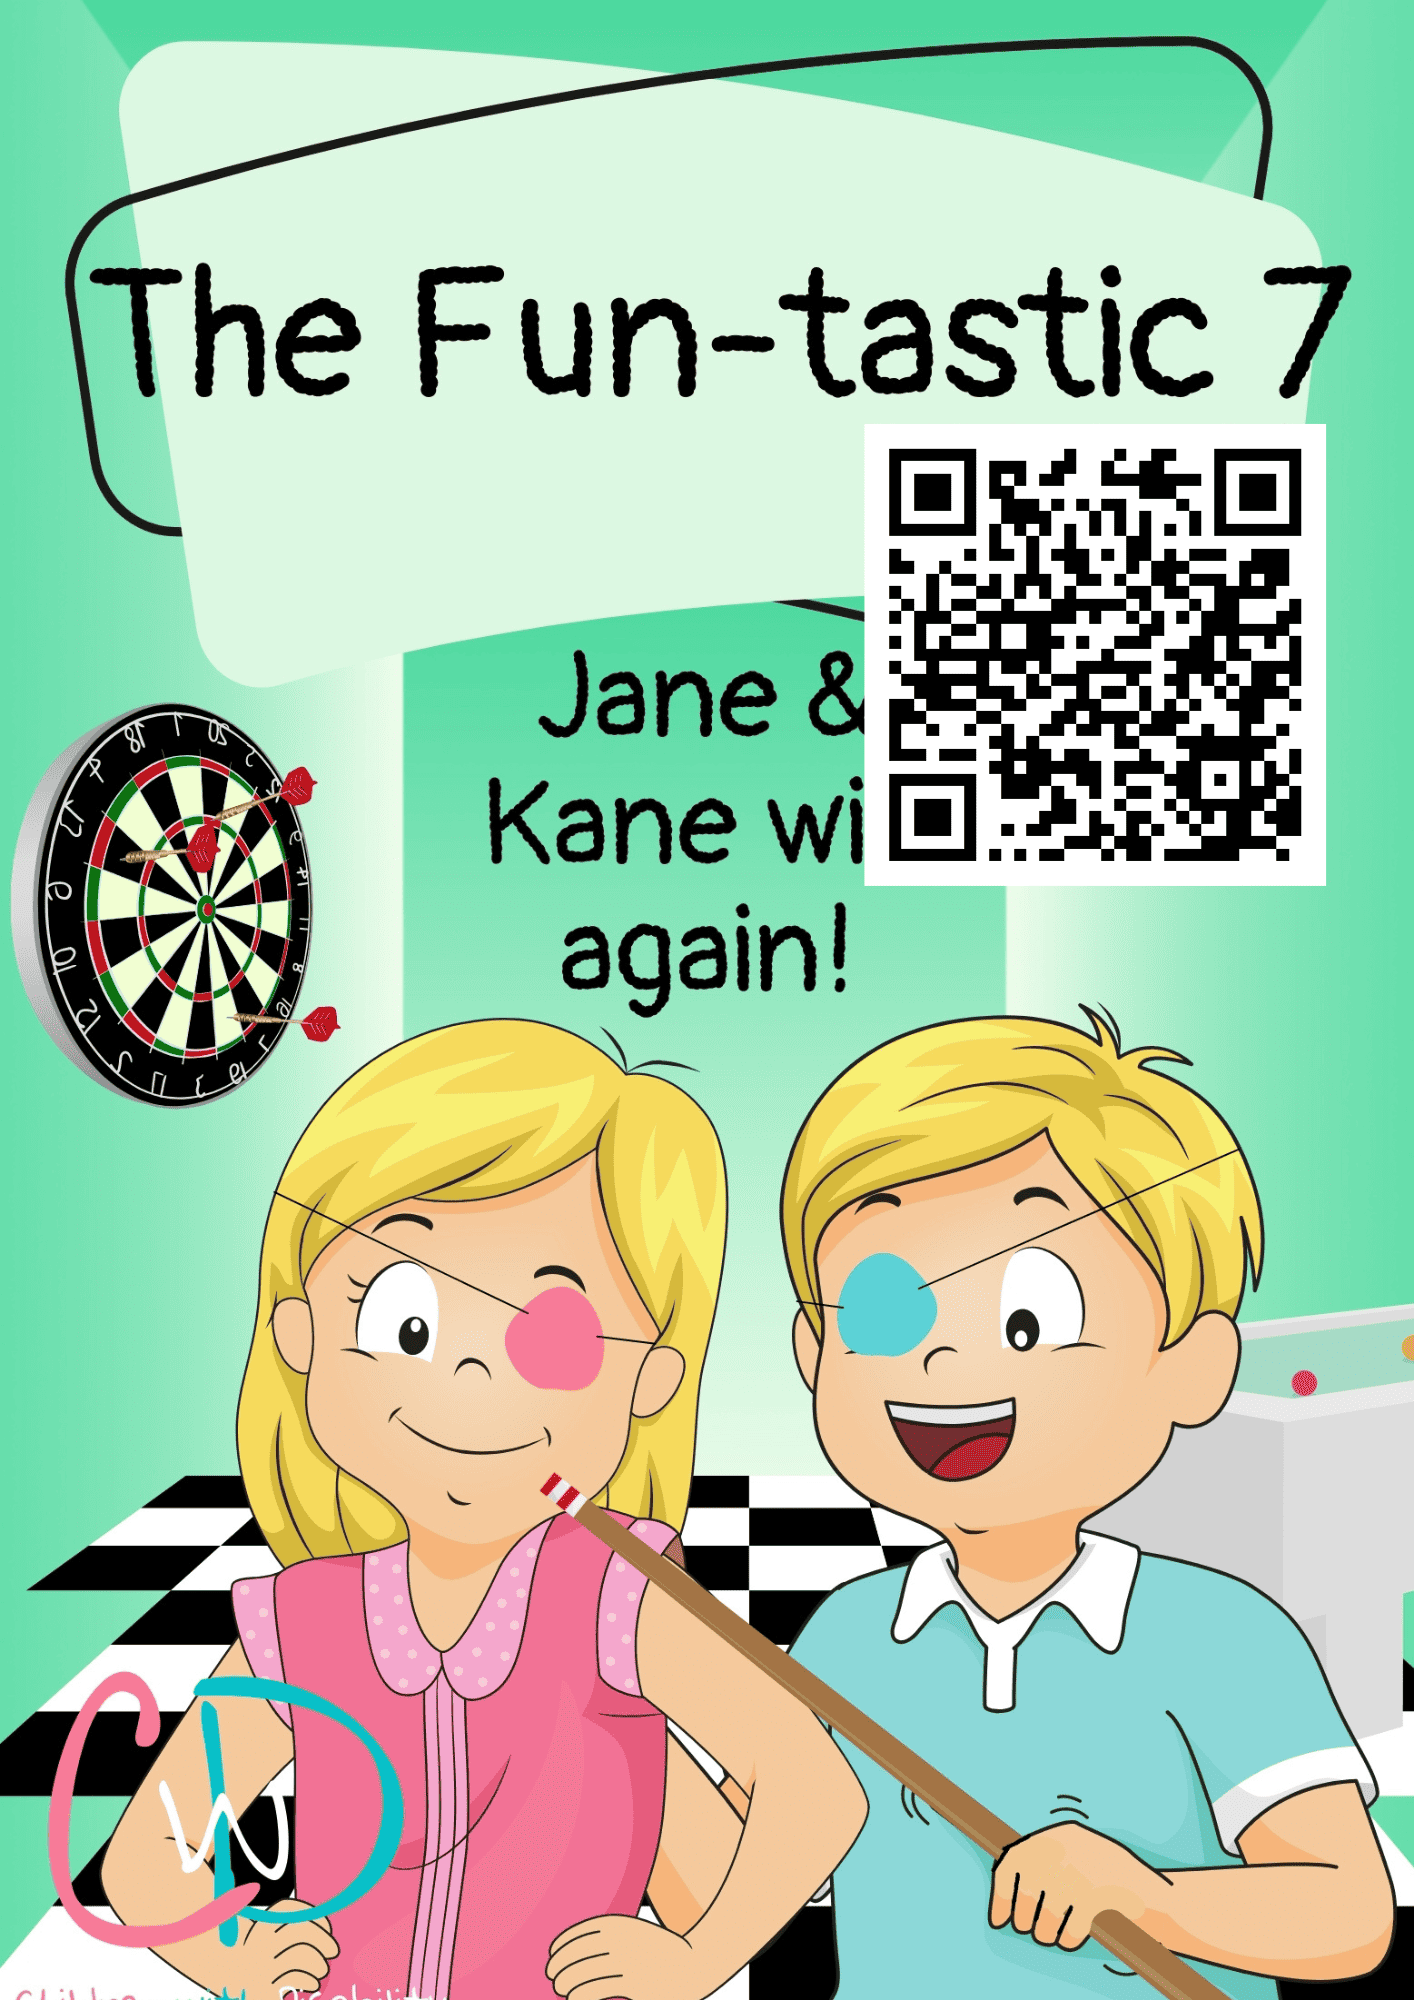 Jane and Kane win again